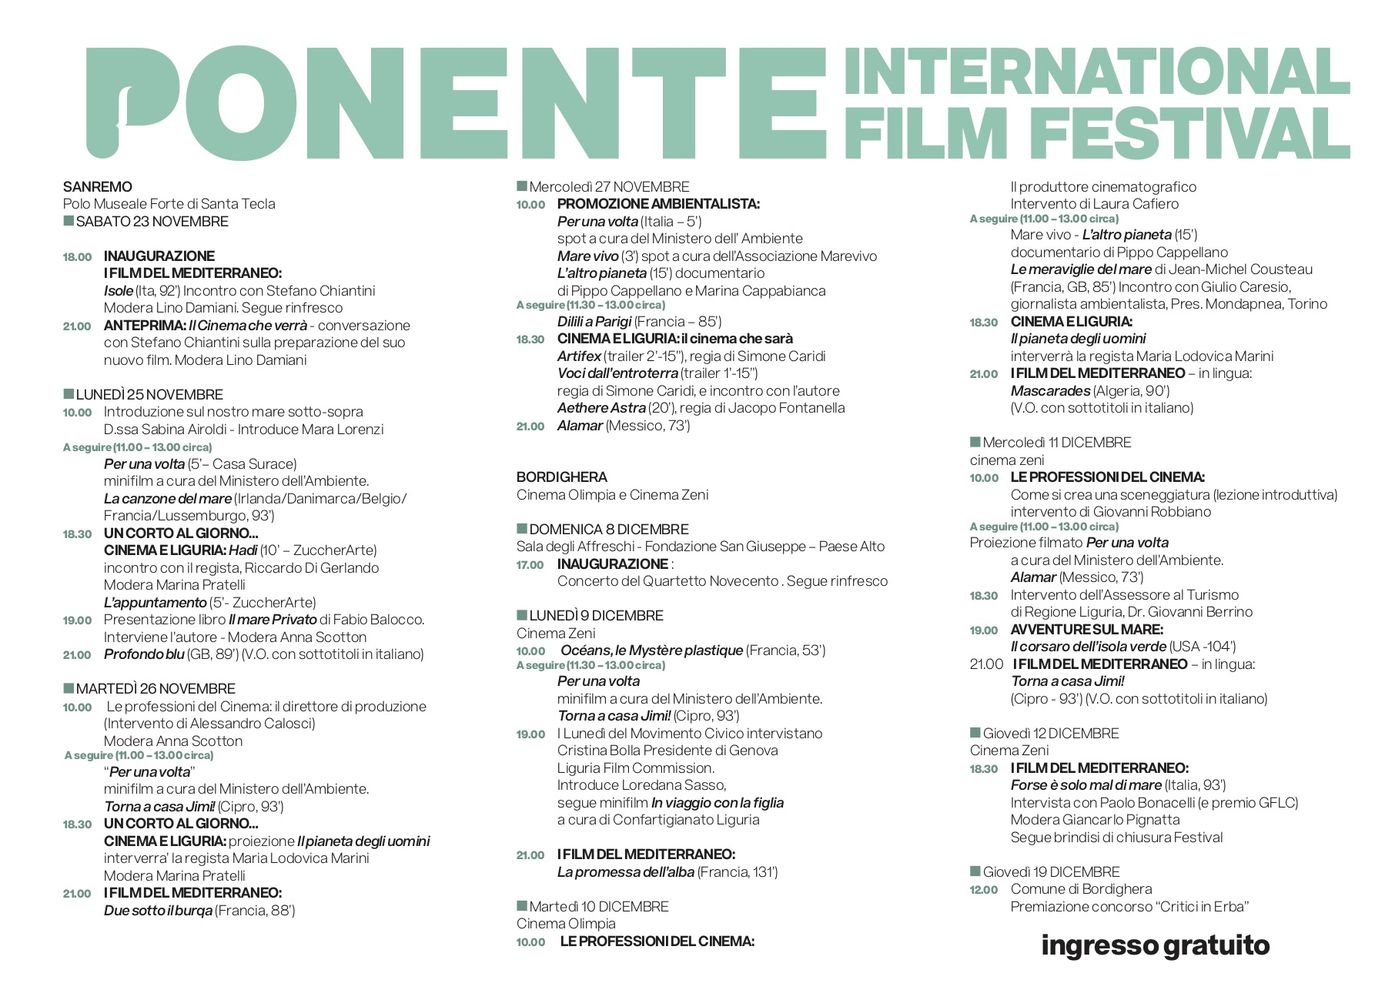 Ponente Film Festival Bordighera dicembre 2019 Programma1